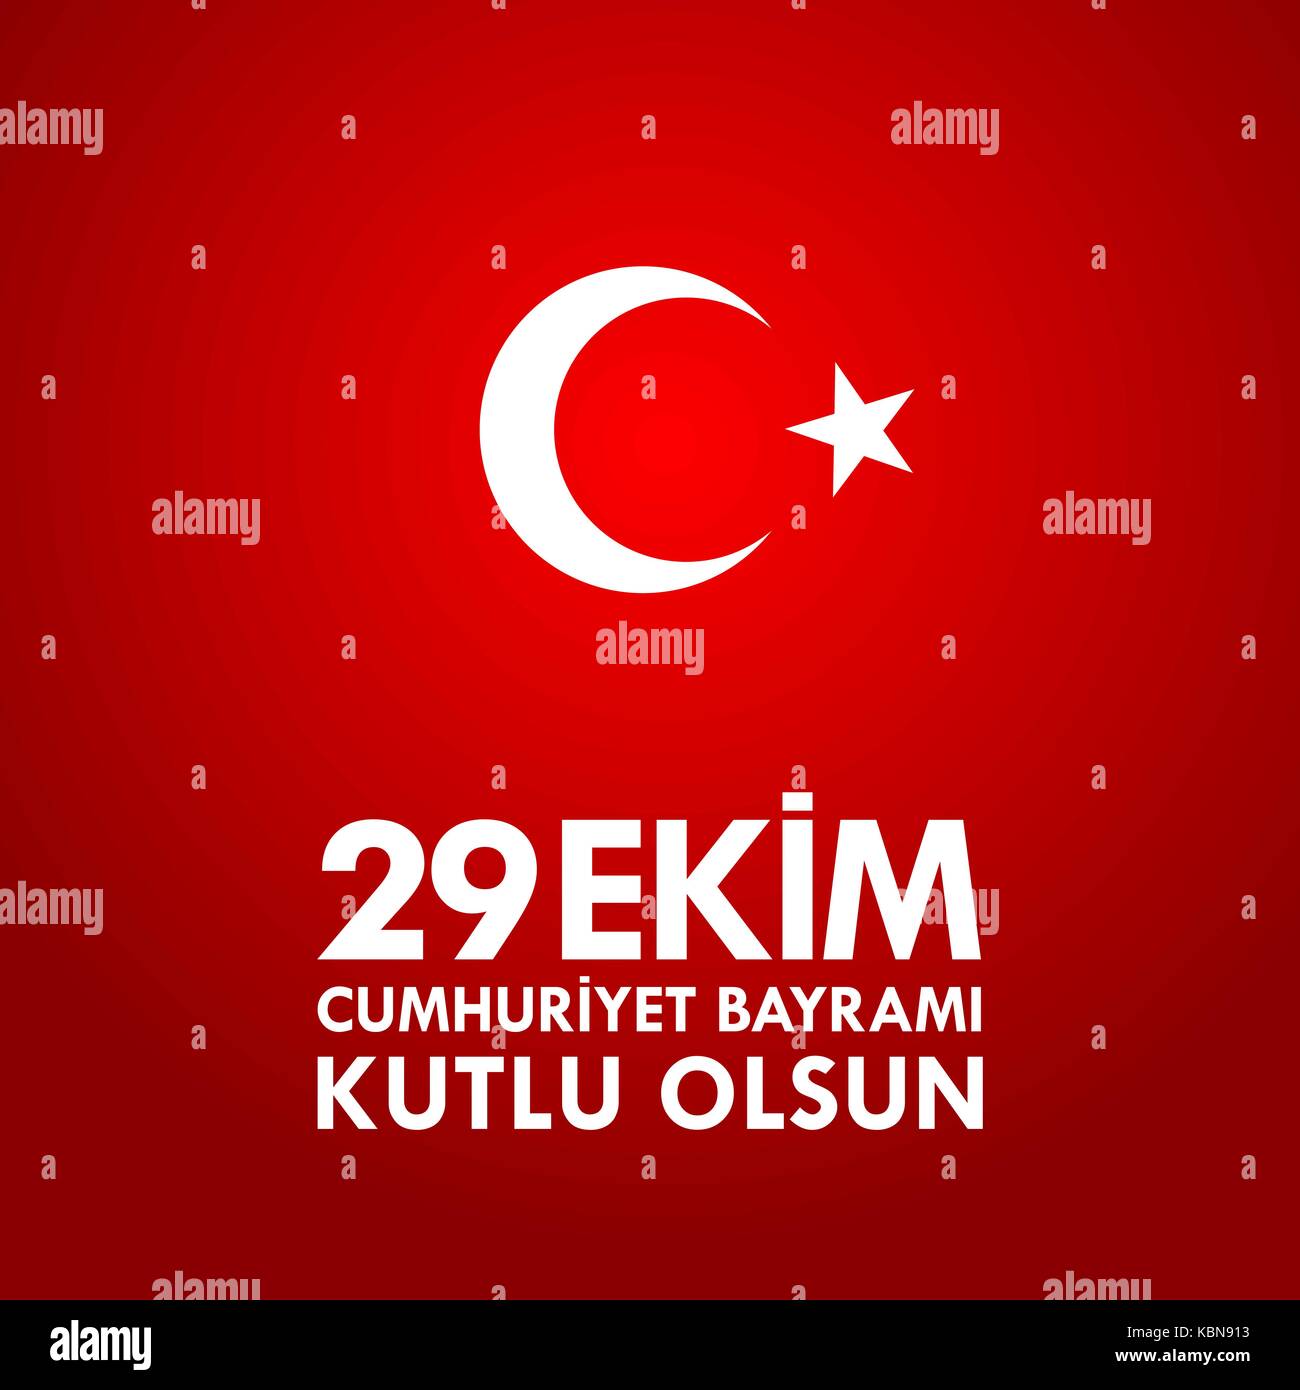 29 ekim cumhuriyet bayraminiz kutlu olsun. Traduzione: 29 ottobre felice il giorno della repubblica turca. Illustrazione Vettoriale